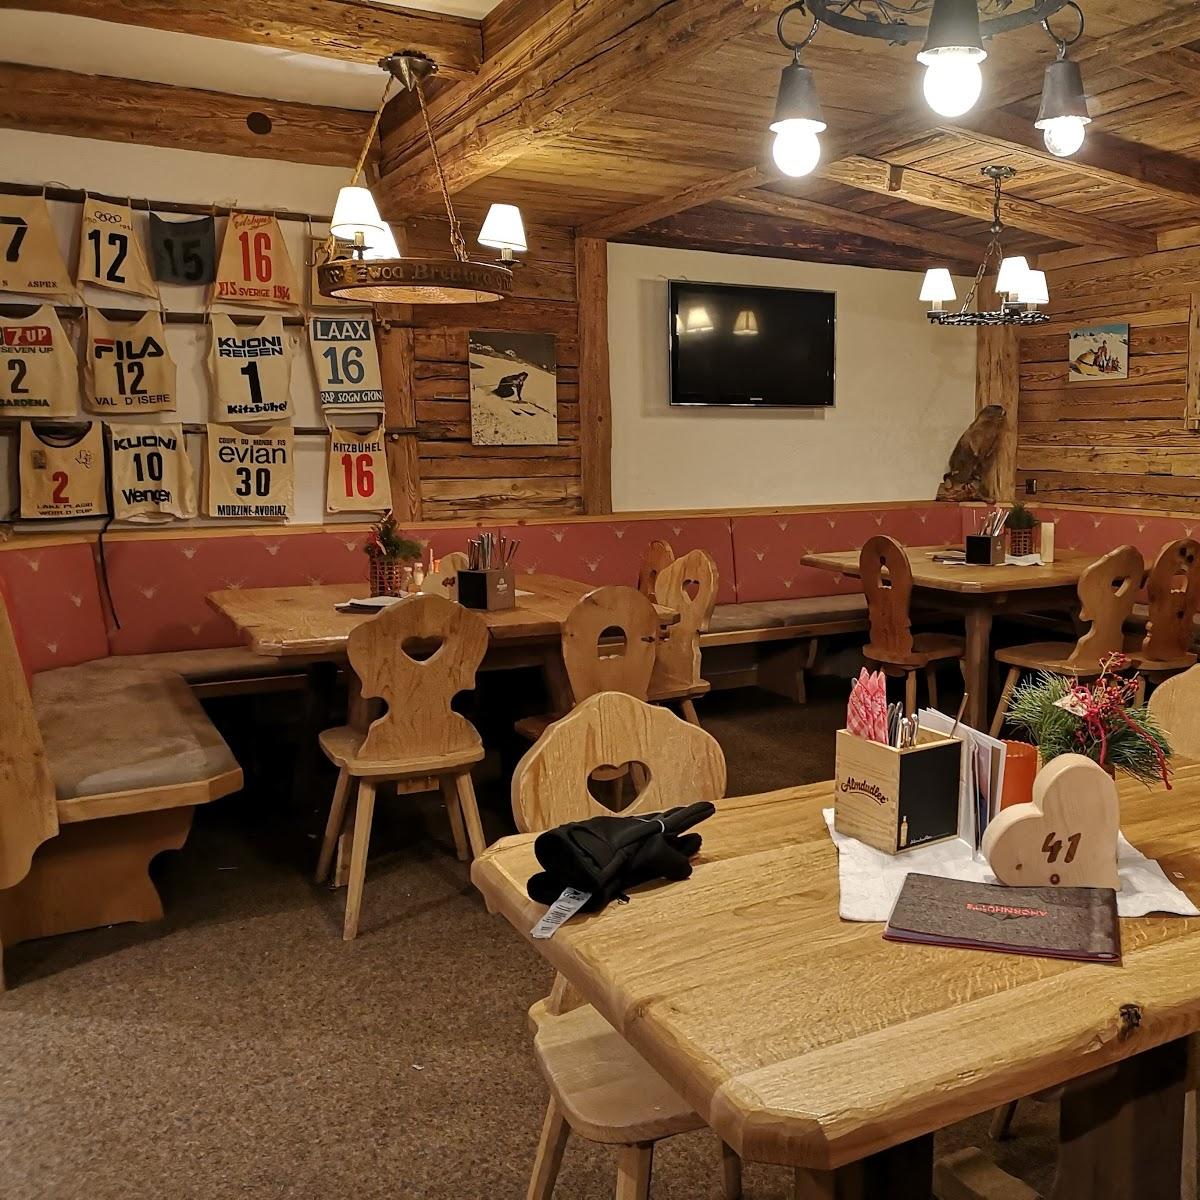 Restaurant "AHORNHÜTTE AHORNLODGE MAYRHOFEN" in Mayrhofen